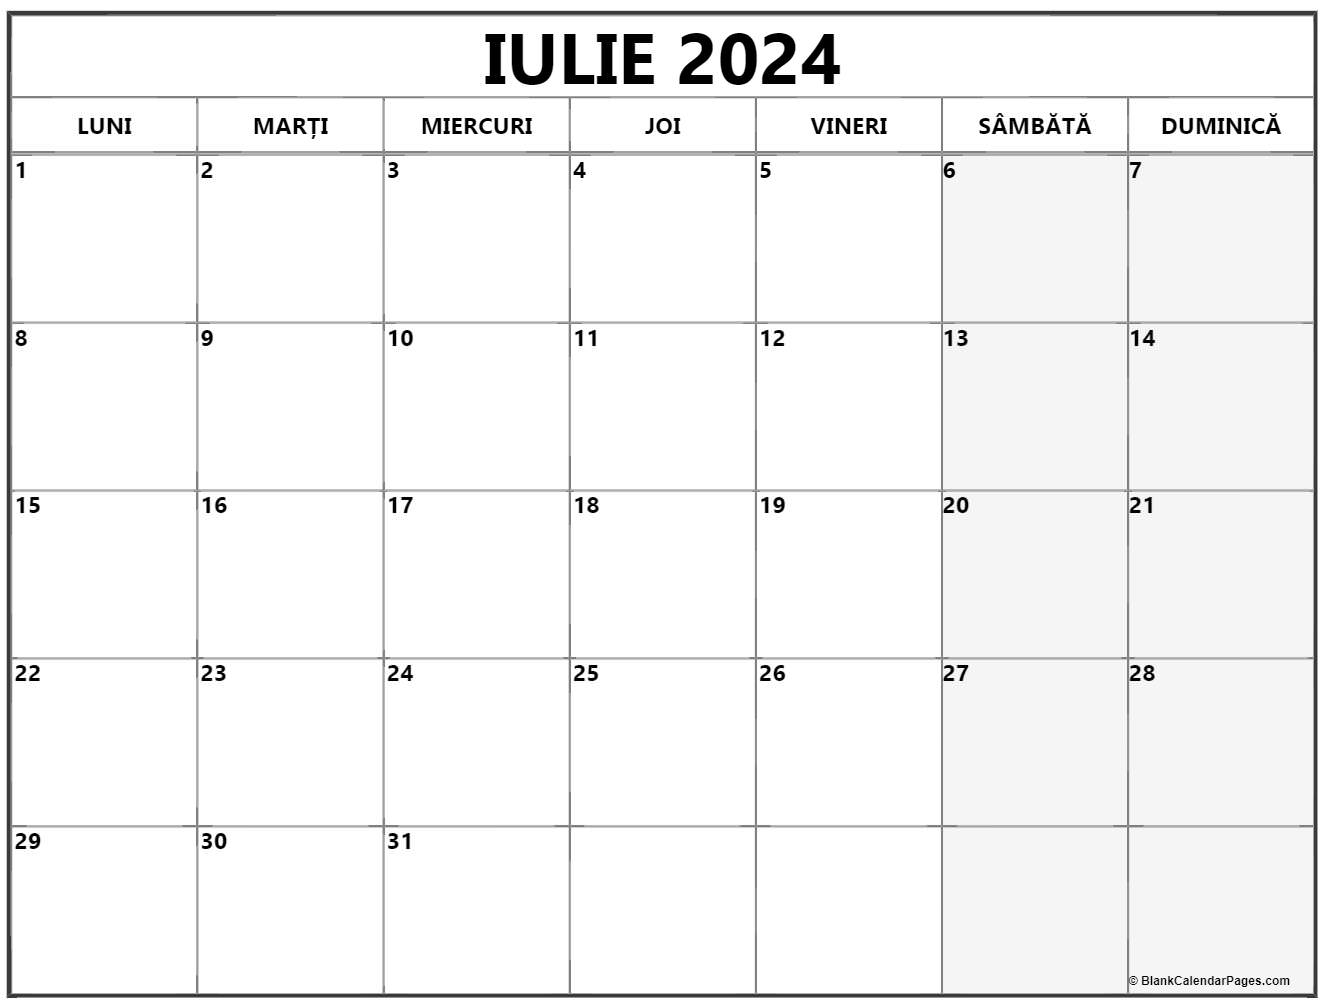 Calendarul iulie 2024 imprimabil gratuit in romana